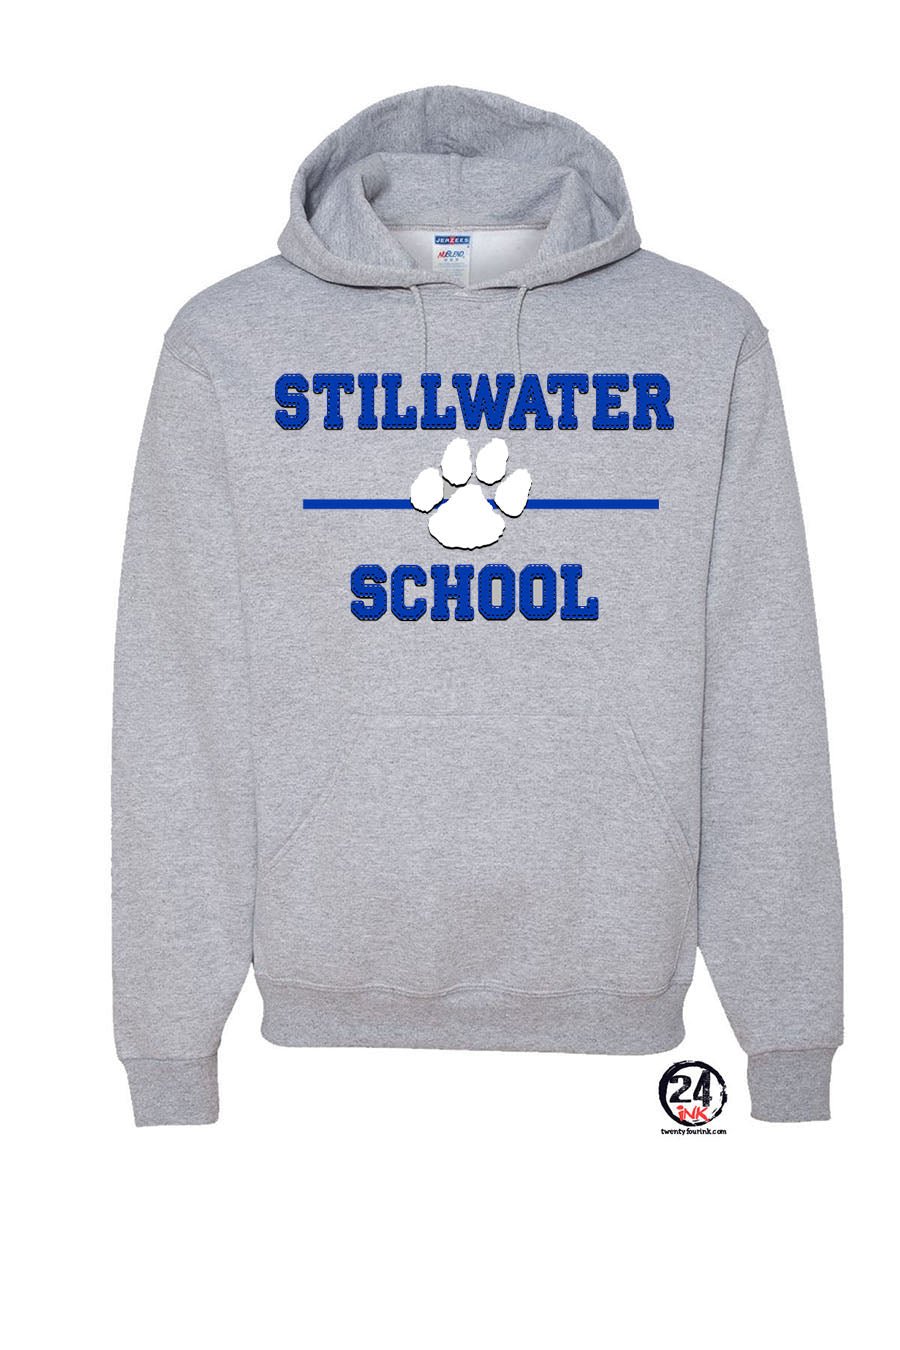 Stillwater Design 11 Hooded Sweatshirt